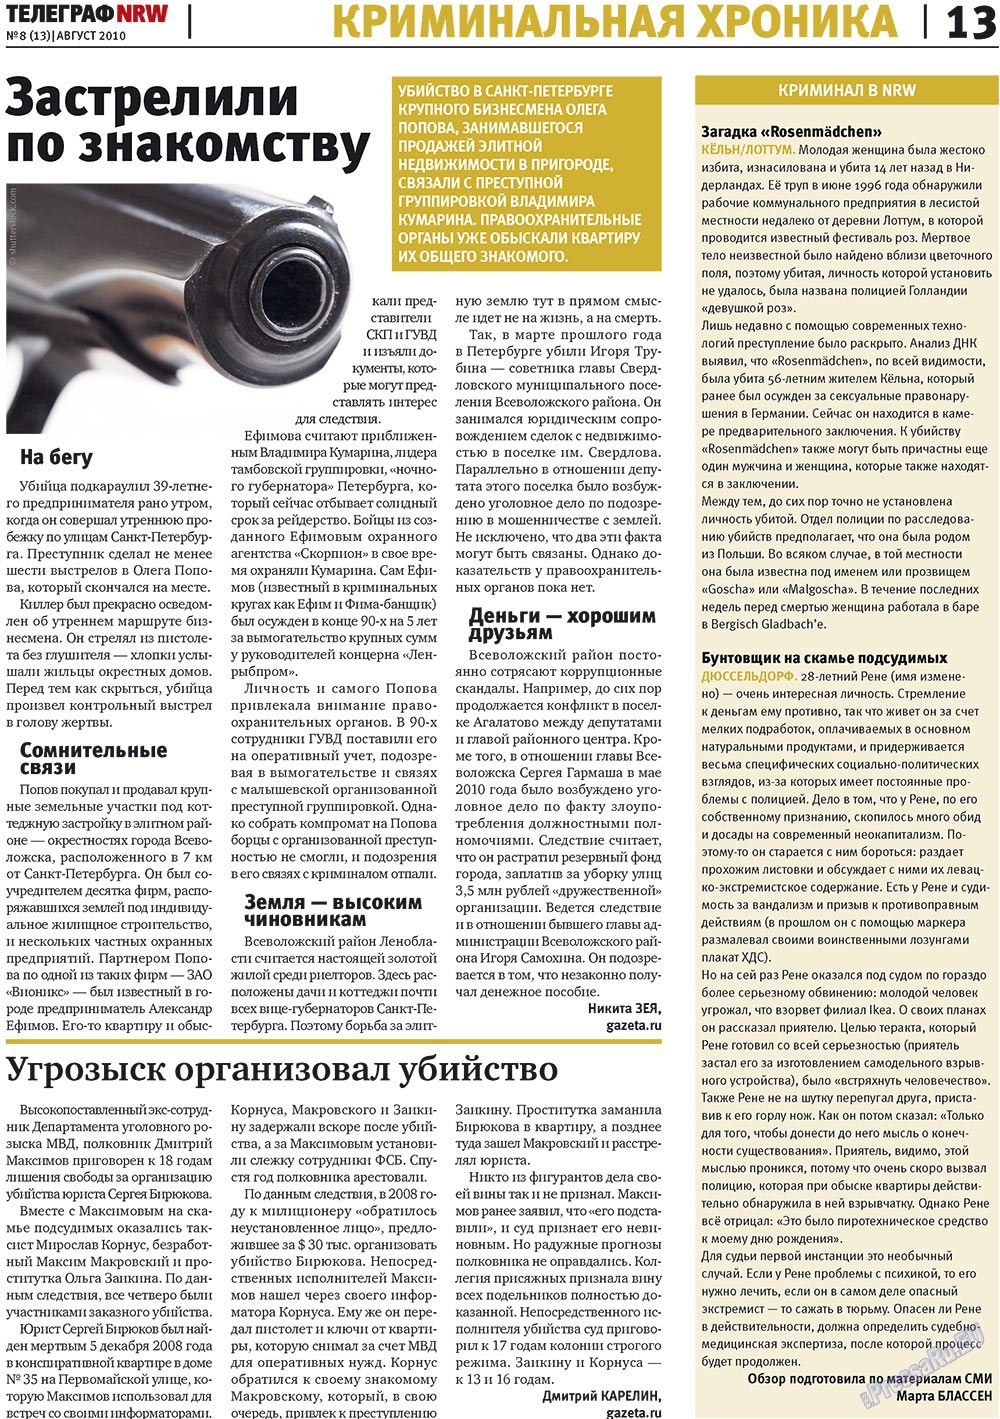 Телеграф NRW (газета). 2010 год, номер 8, стр. 13